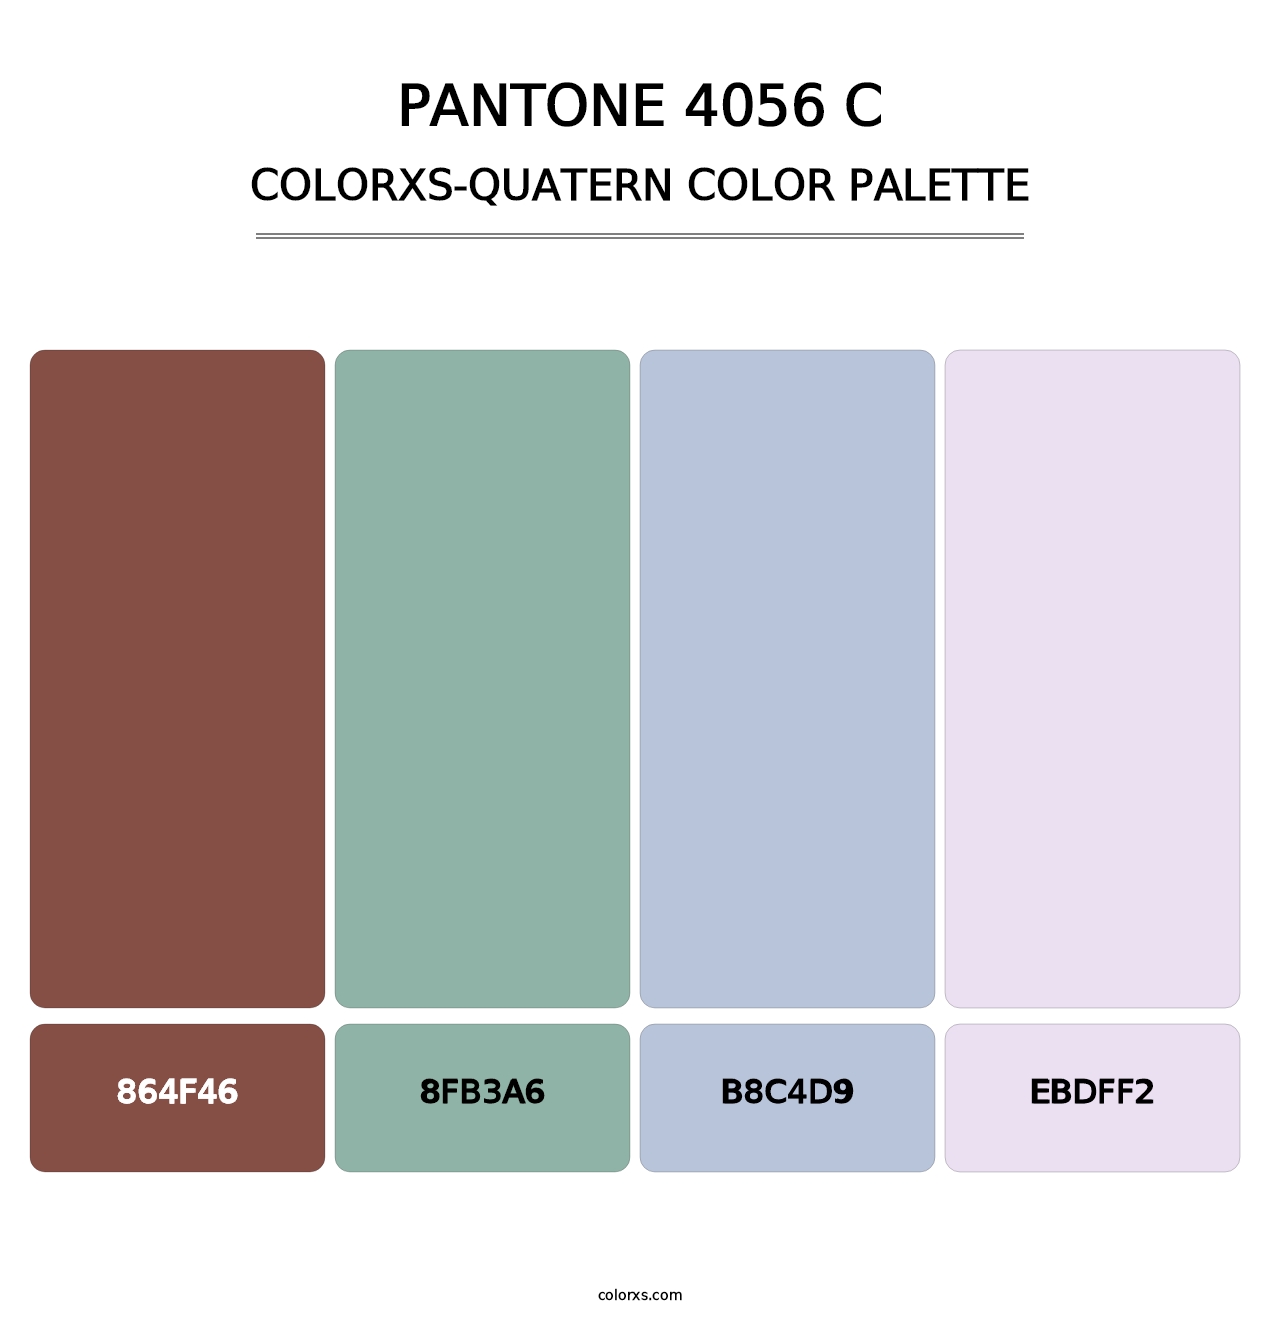 PANTONE 4056 C - Colorxs Quatern Palette